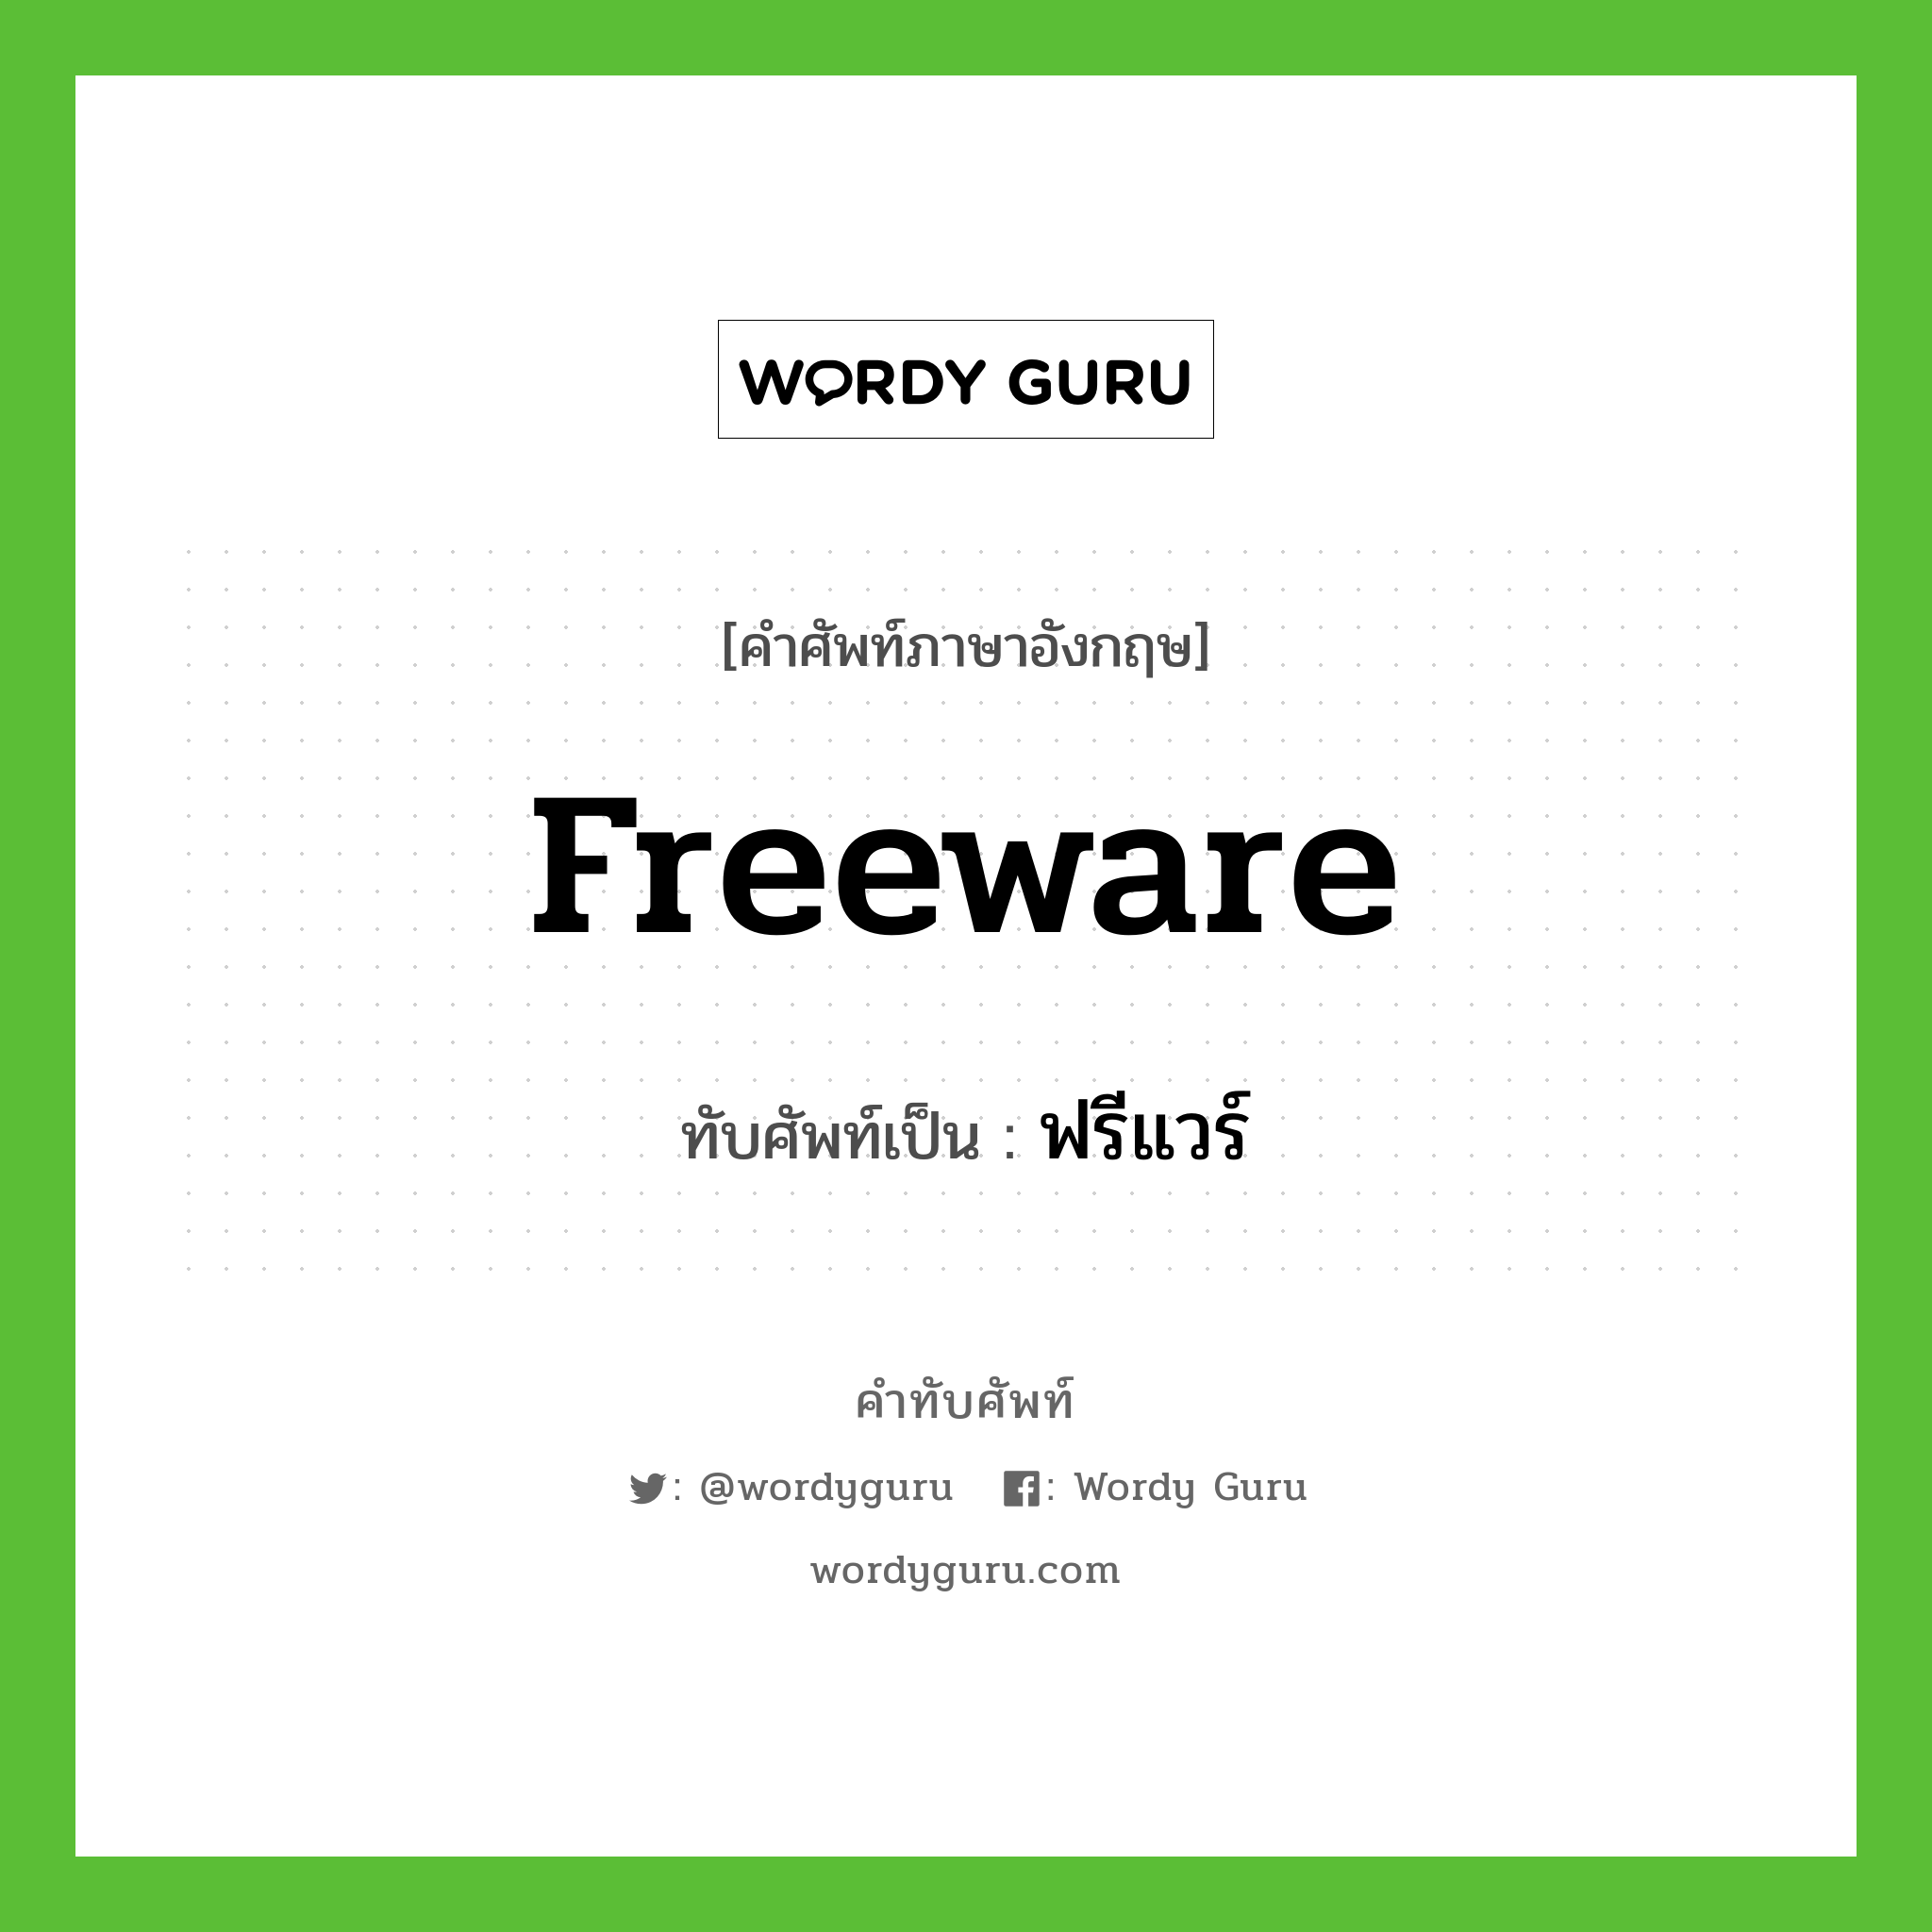 freeware เขียนเป็นคำไทยว่าอะไร?, คำศัพท์ภาษาอังกฤษ freeware ทับศัพท์เป็น ฟรีแวร์